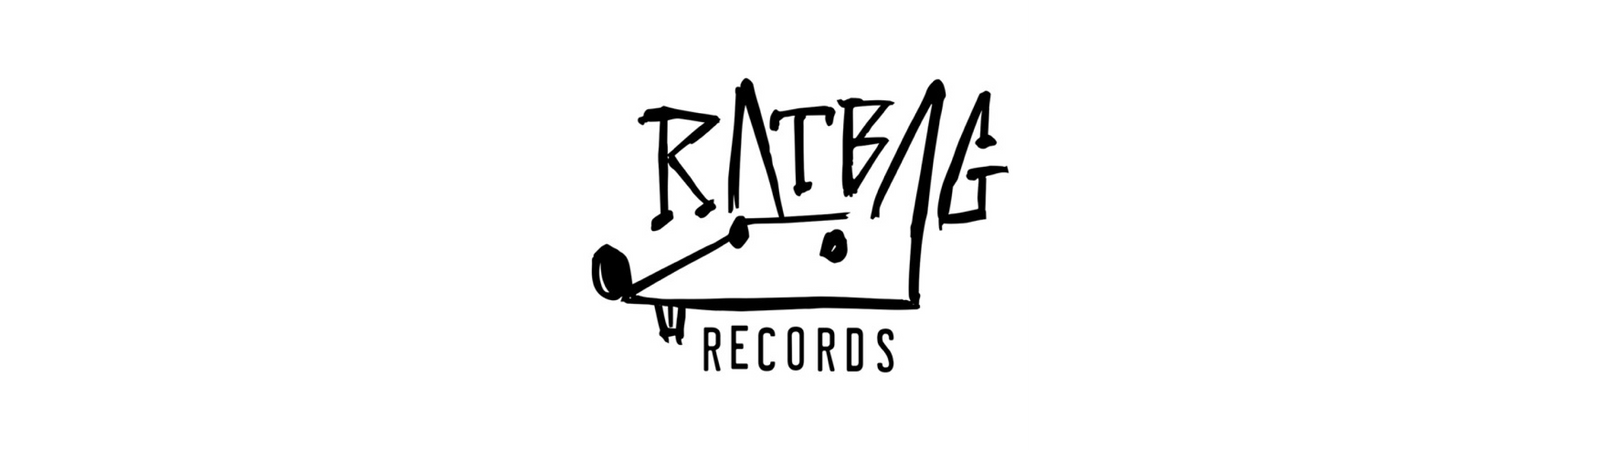 Ratbag Records